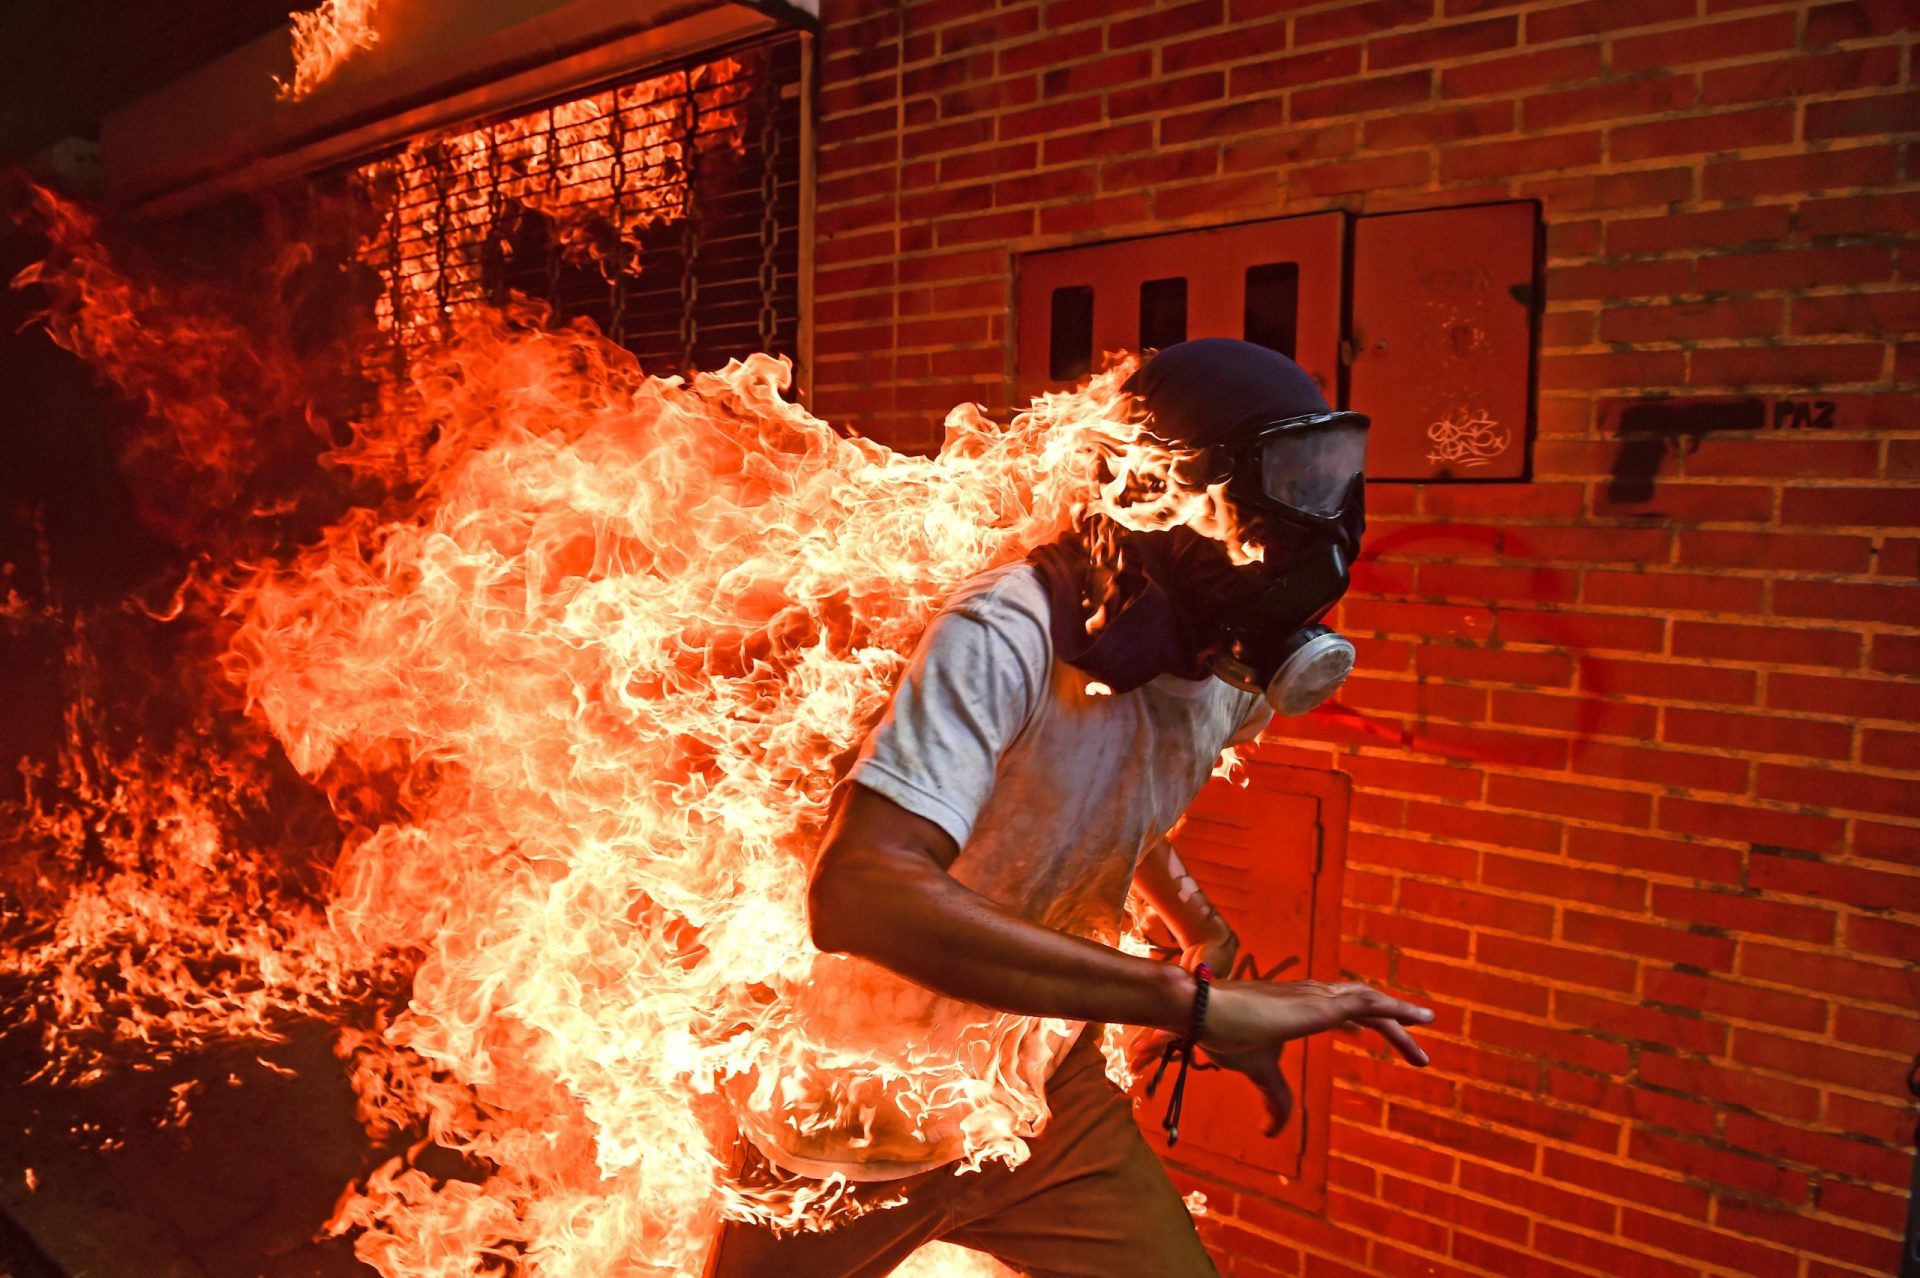 World Press Photo para imagem de manifestante em chamas na Venezuela